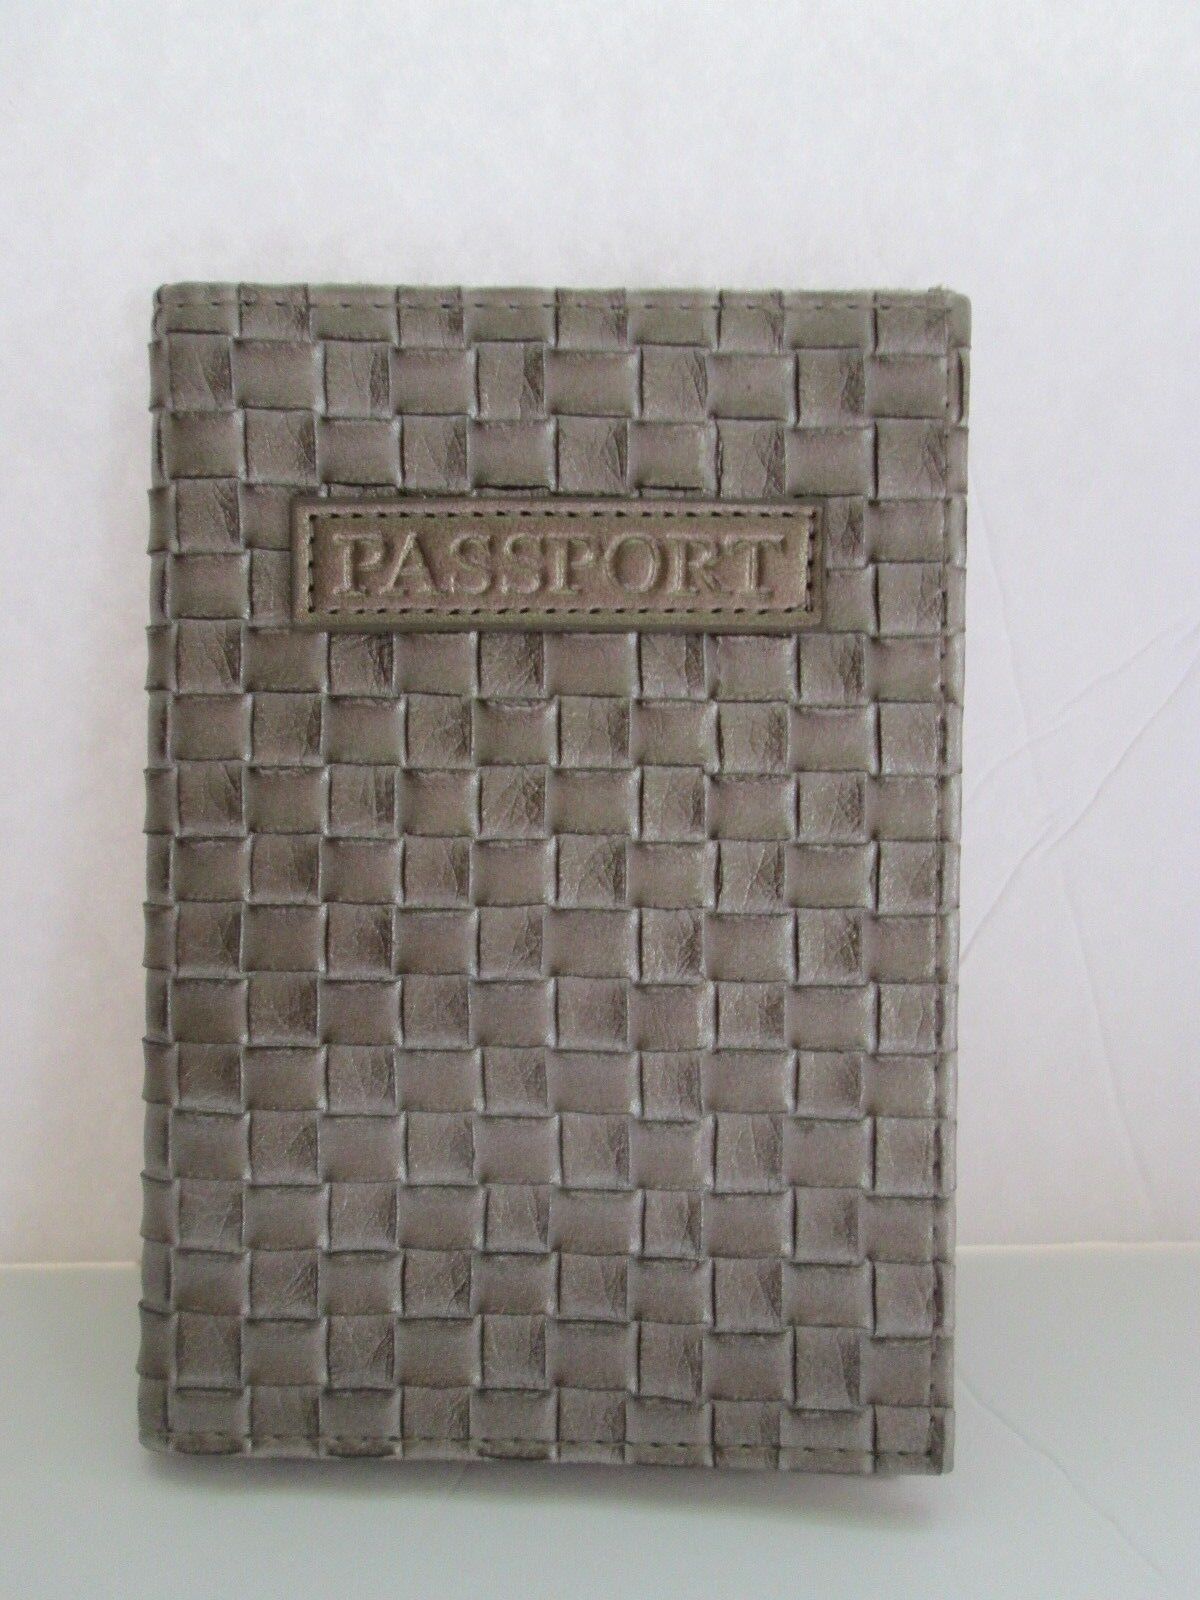 Estée Lauder Limited Edition Travel Passport ID Document Holder Case Cover Pouch